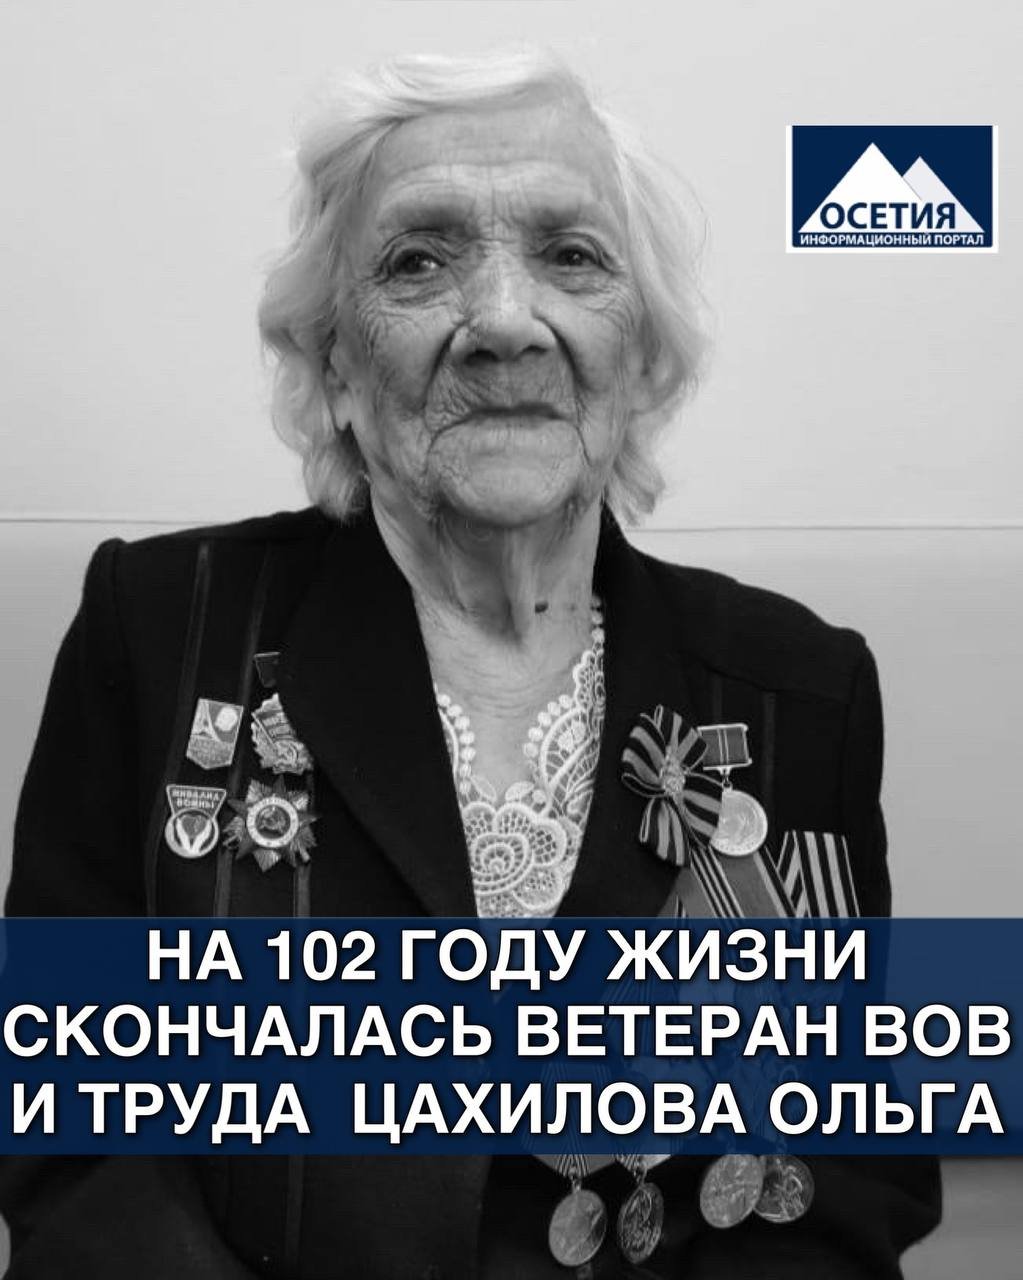 На 102 году жизни скончалась Ветеран ВОВ и труда Цахилова Ольга Ивановна